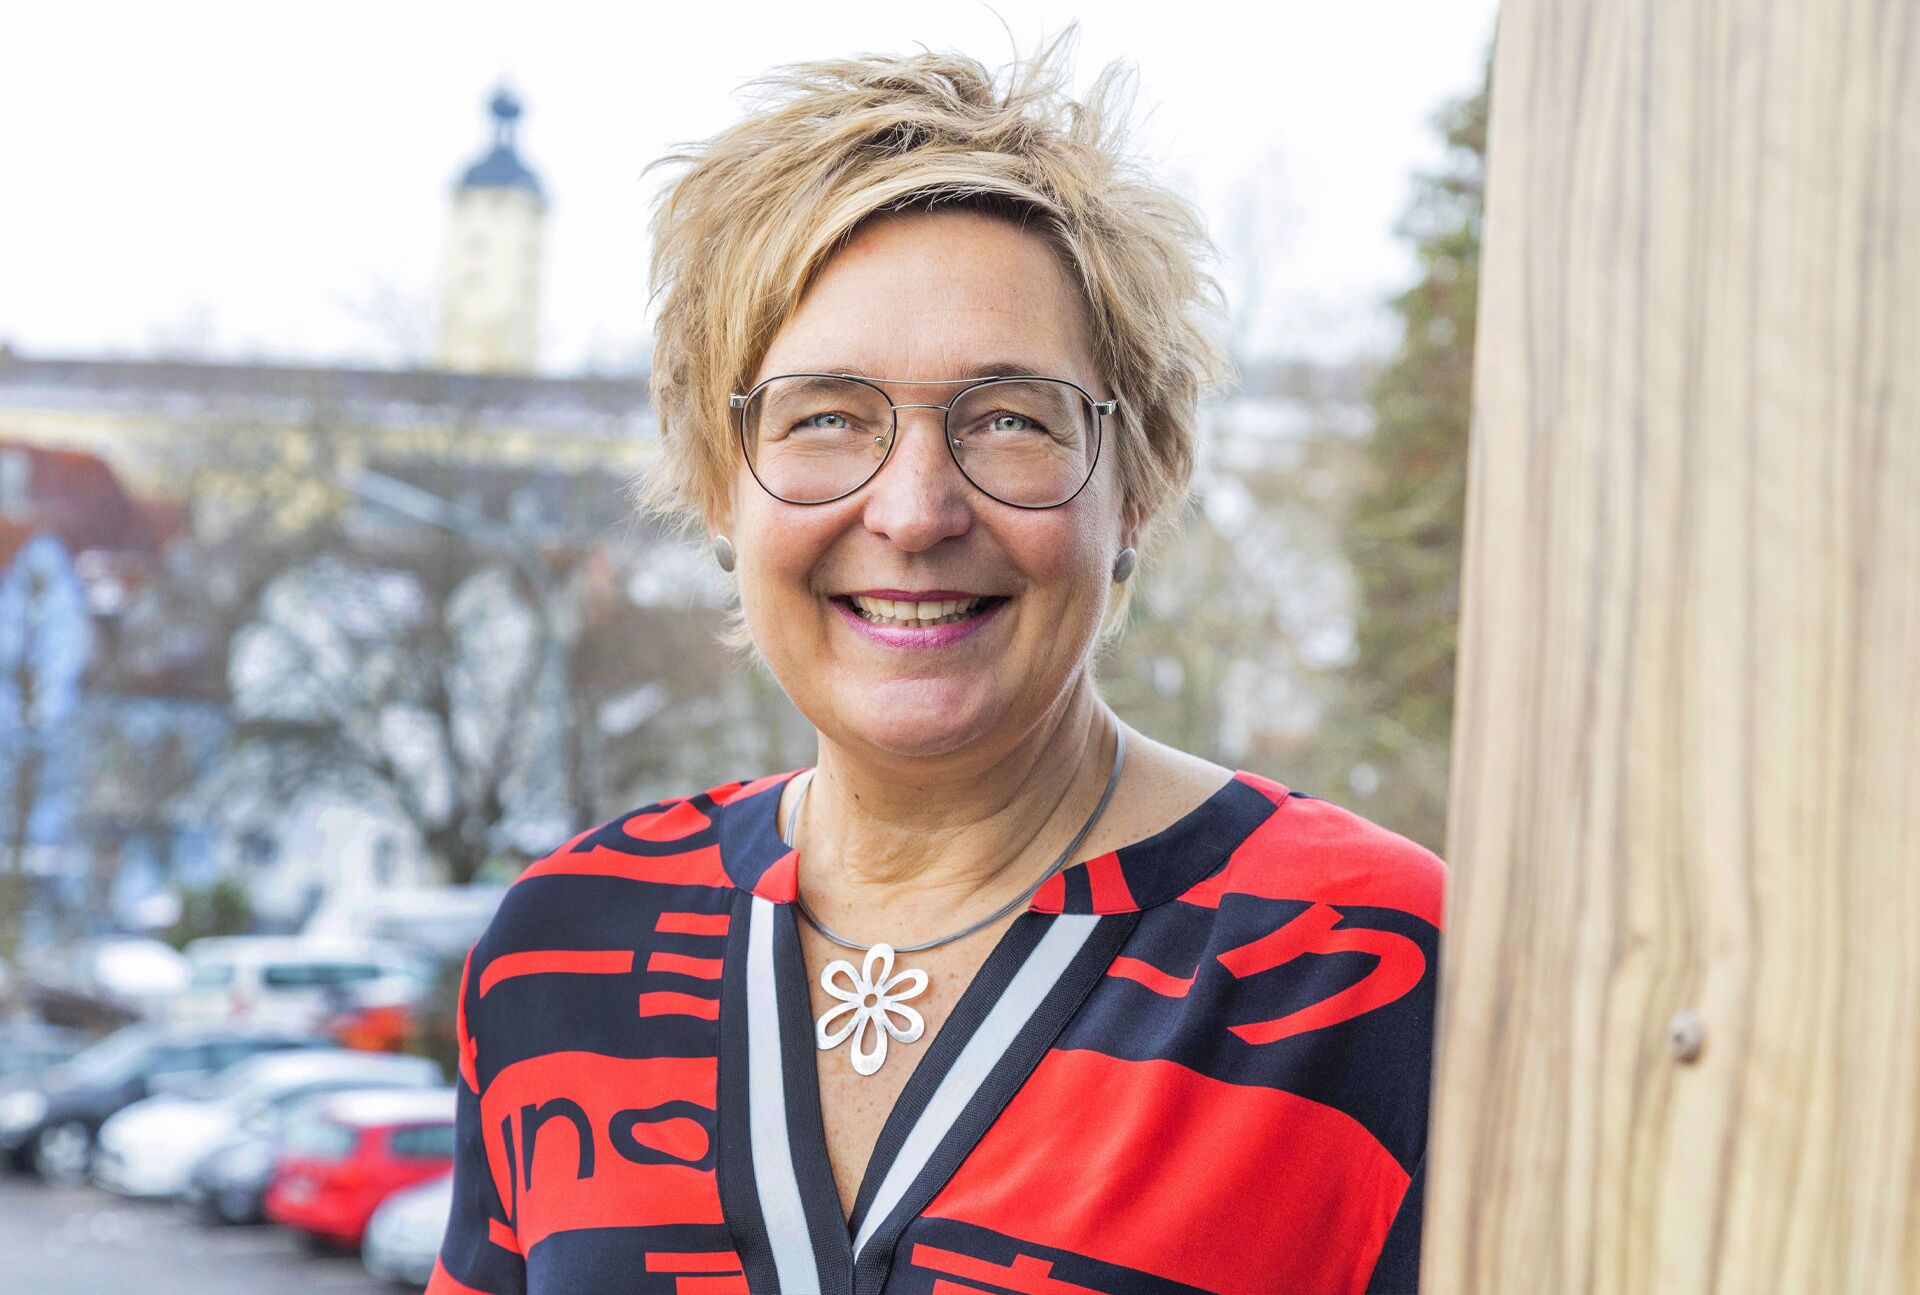 Heike Schokatz – Bürgermeisterin für Gundelsheim